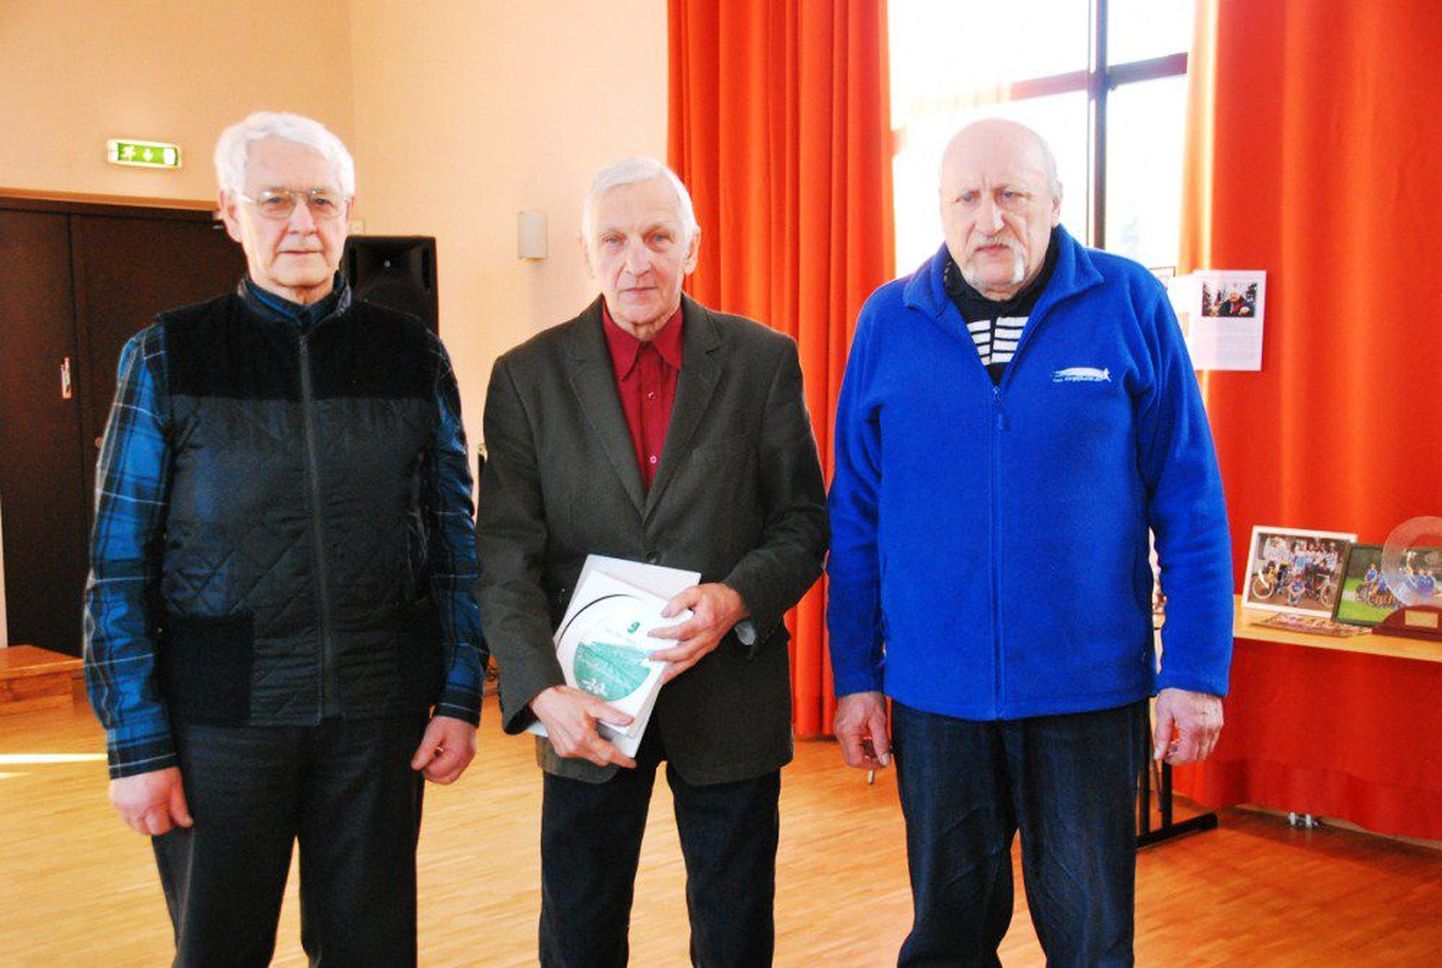 Teisipäeval toimus Pärnu eakate avahoolduskeskuses 22. spordiajaloo päev, millel kuulajatega vestlesid rattaspordiga tegelnud mehed ja tähistati spordiveteran Henno Sepa 95. sünnipäeva.